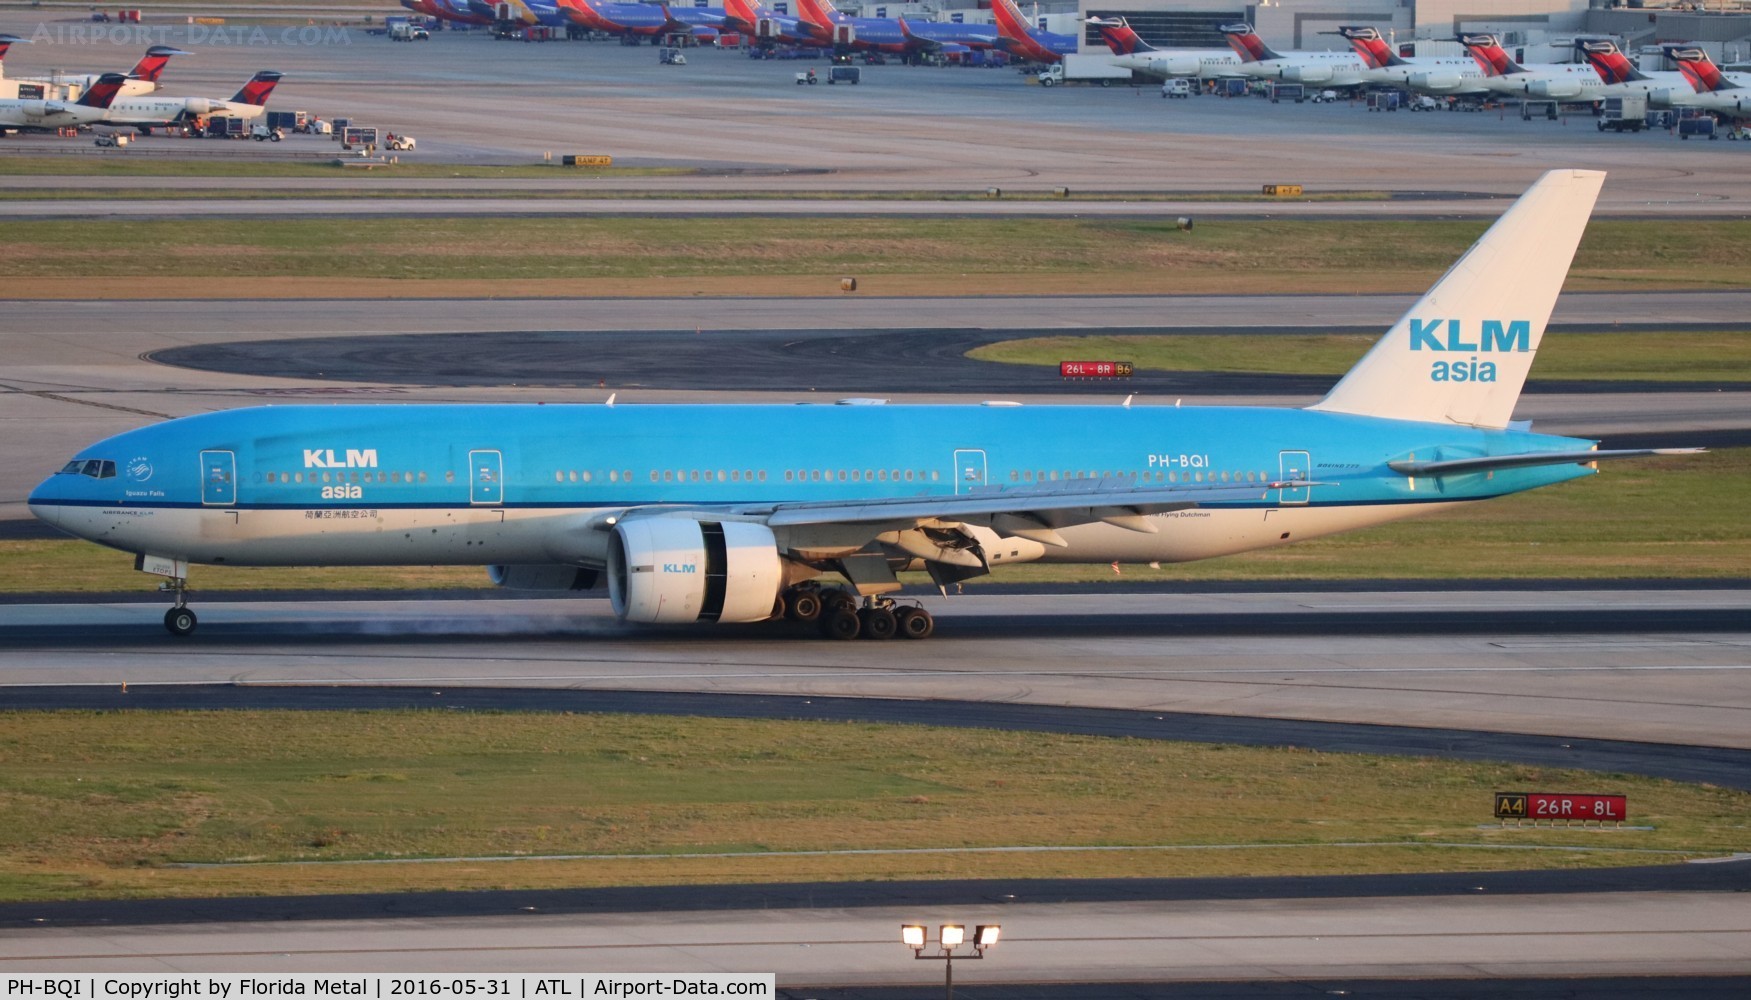 PH-BQI, 2004 Boeing 777-206/ER C/N 33714, KLM Asia